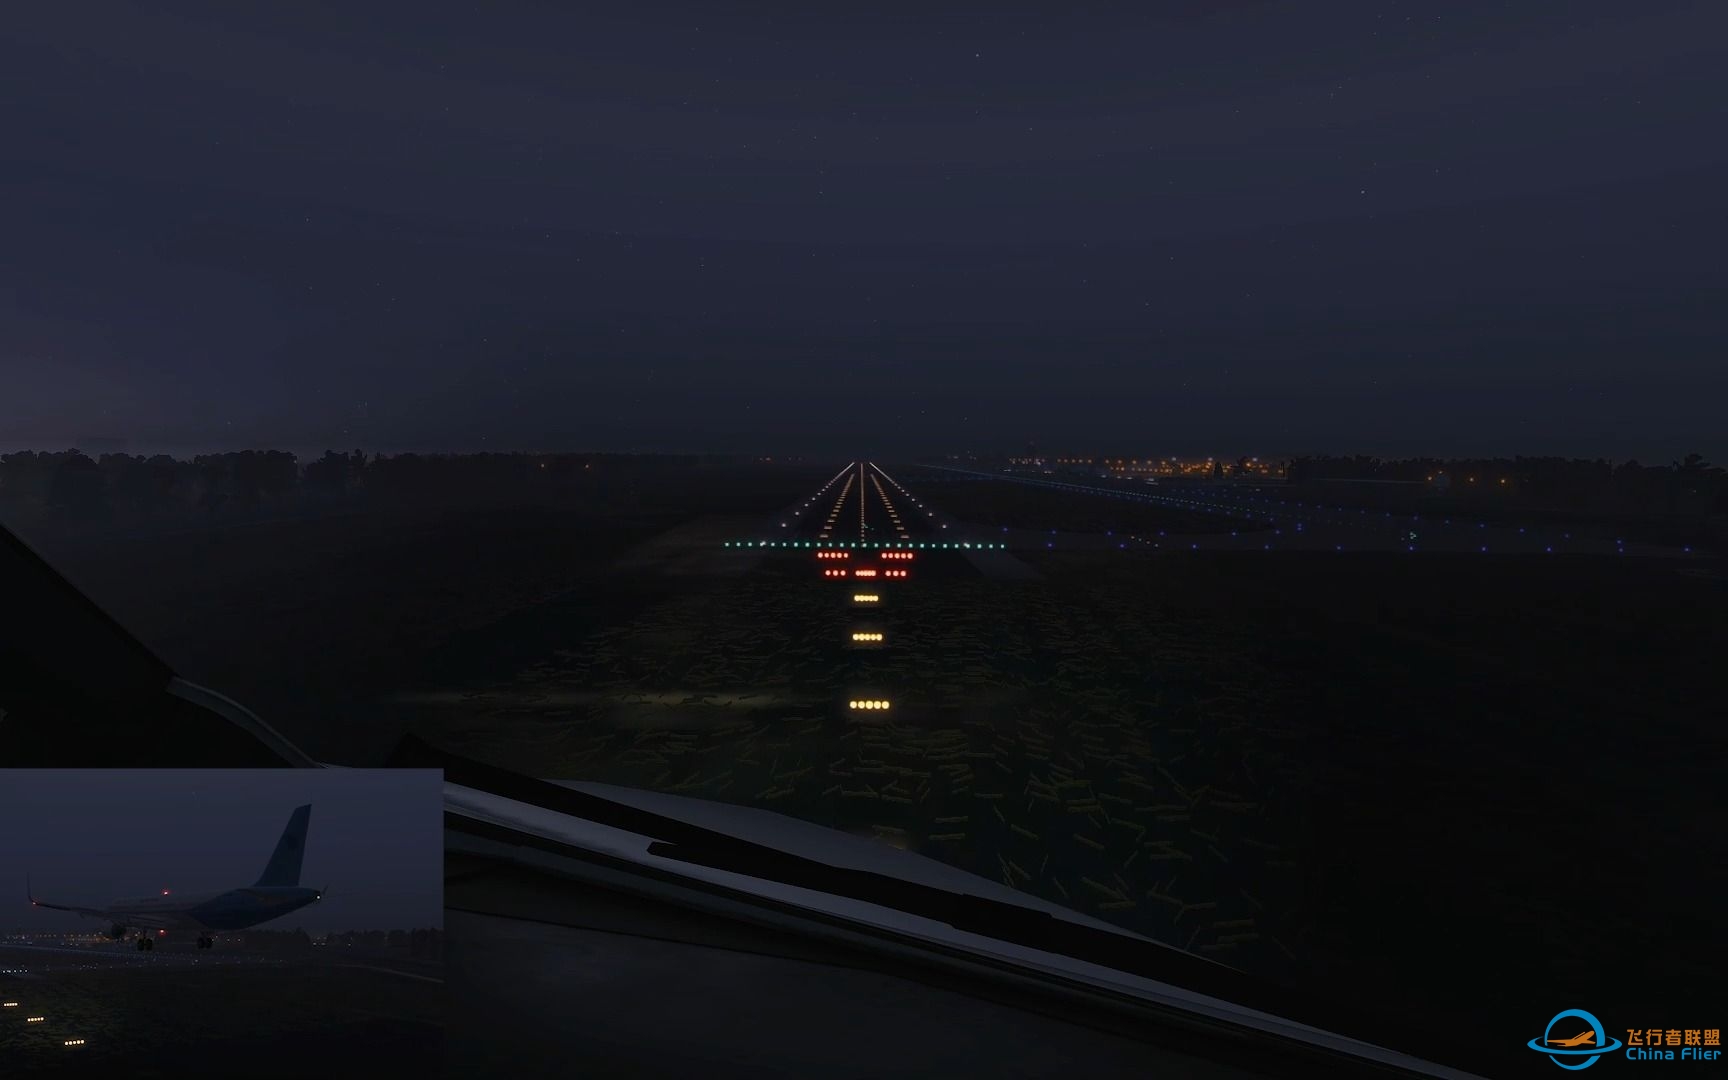 【X-Plane 11】目视进近盐城南洋机场RWY23-1010 